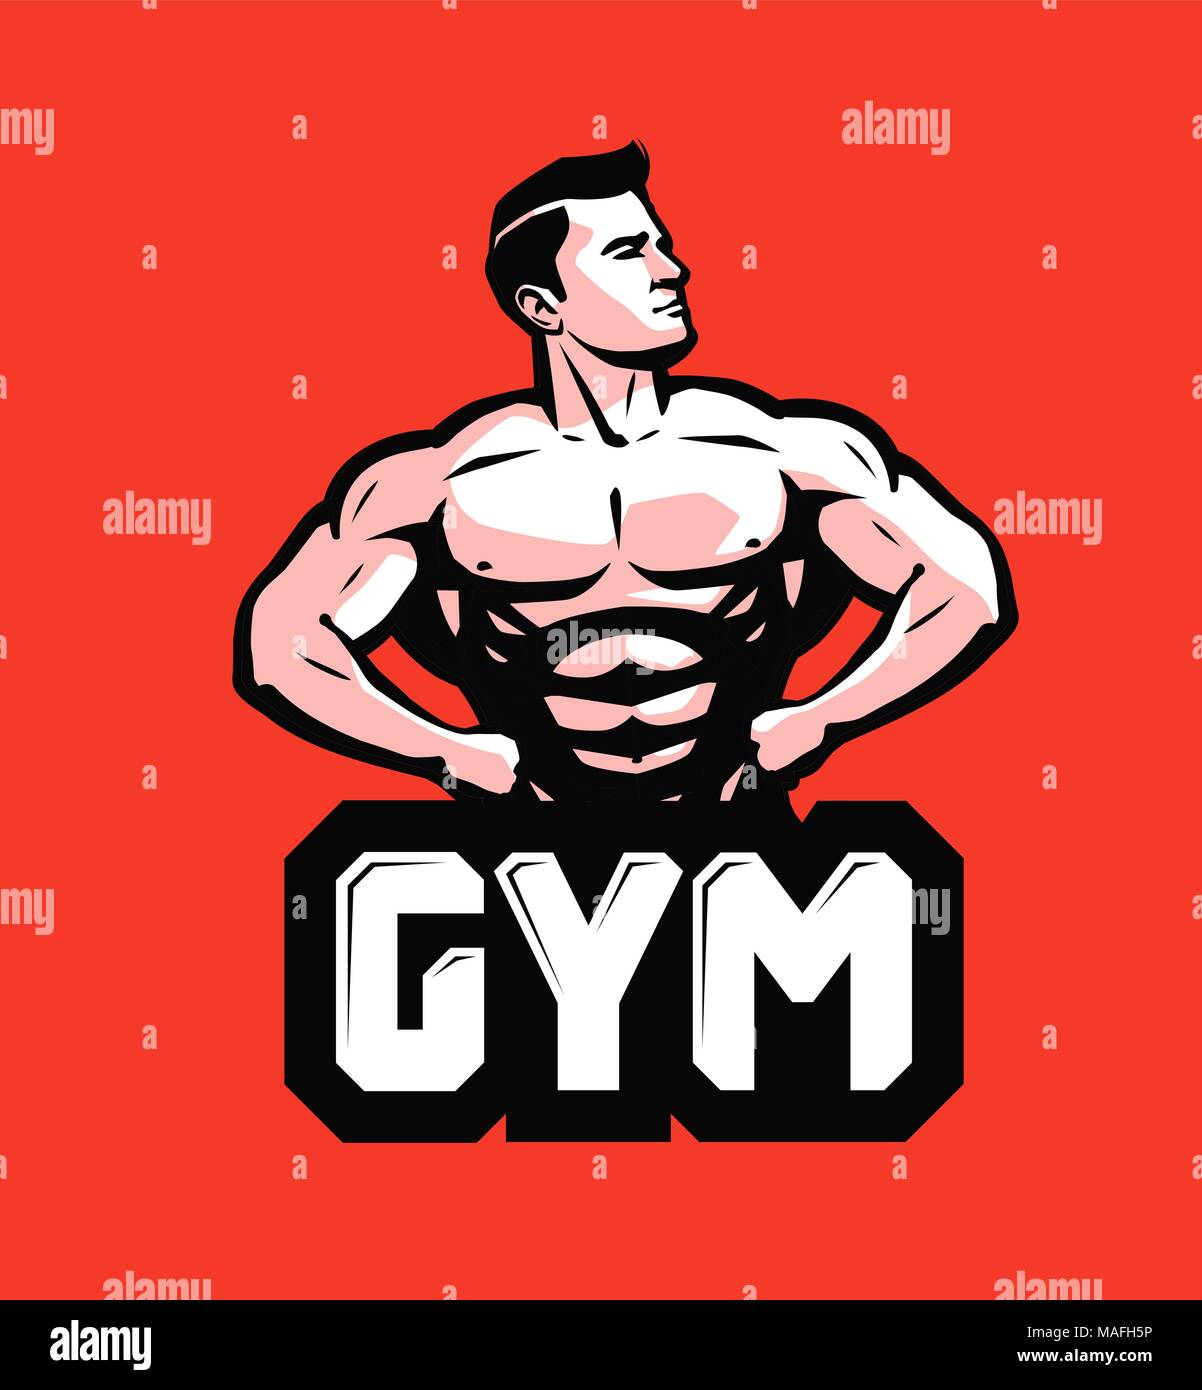 Palestra, bodybuilding logo o etichetta. Uomo Forte con grandi muscoli. Illustrazione Vettoriale Illustrazione Vettoriale